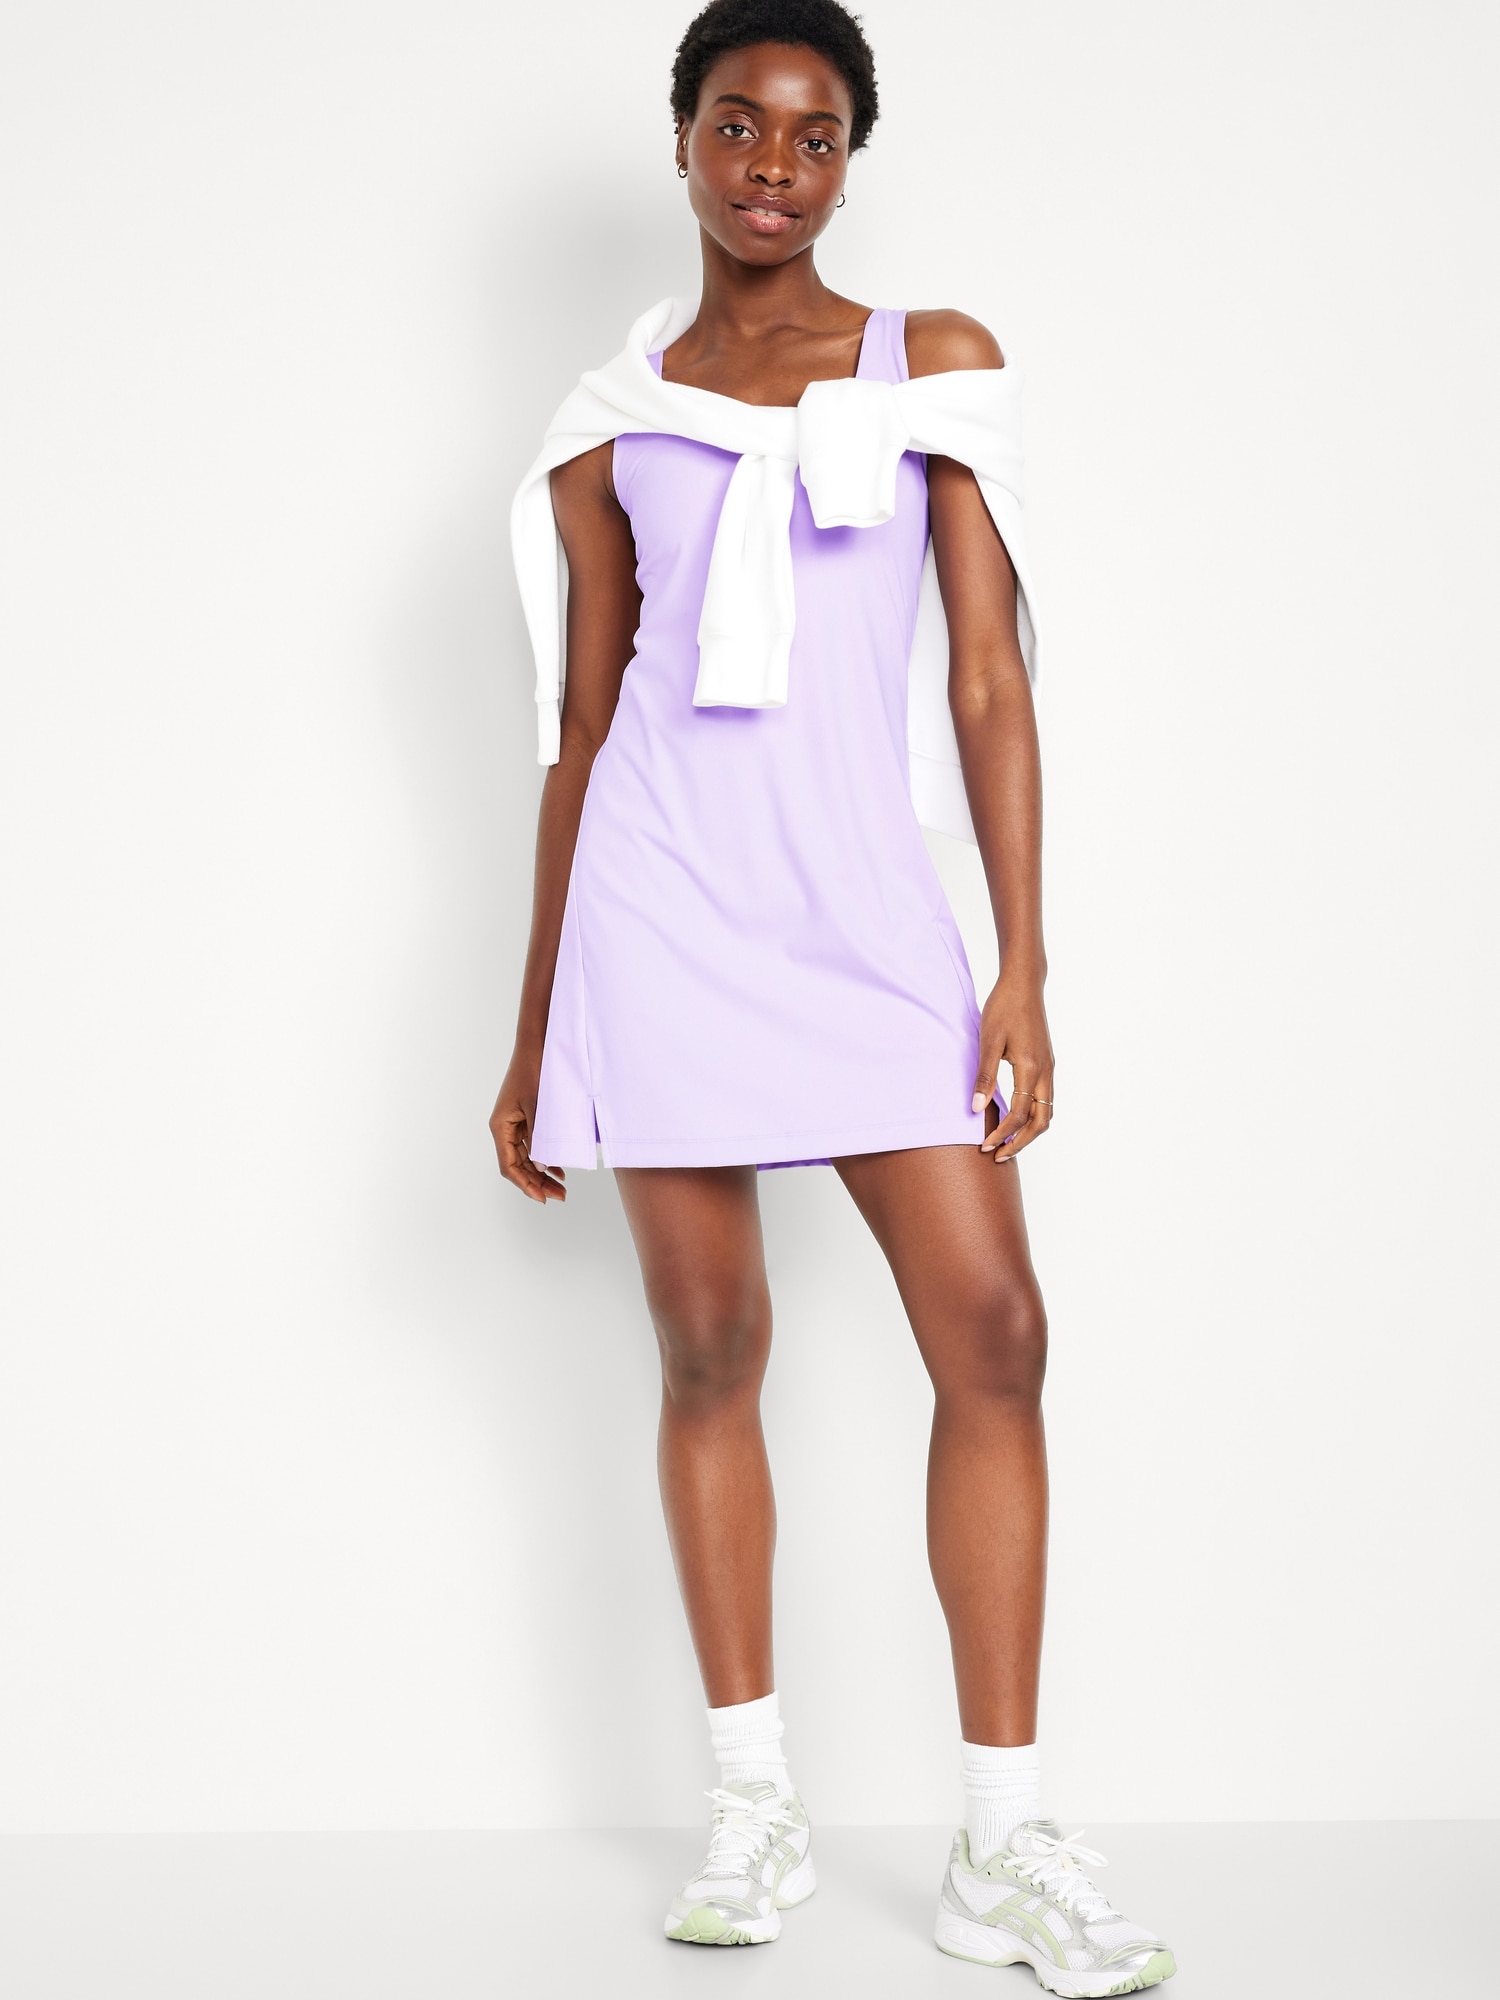 PowerSoft Sleeveless Shelf-Bra Support Dress for Women